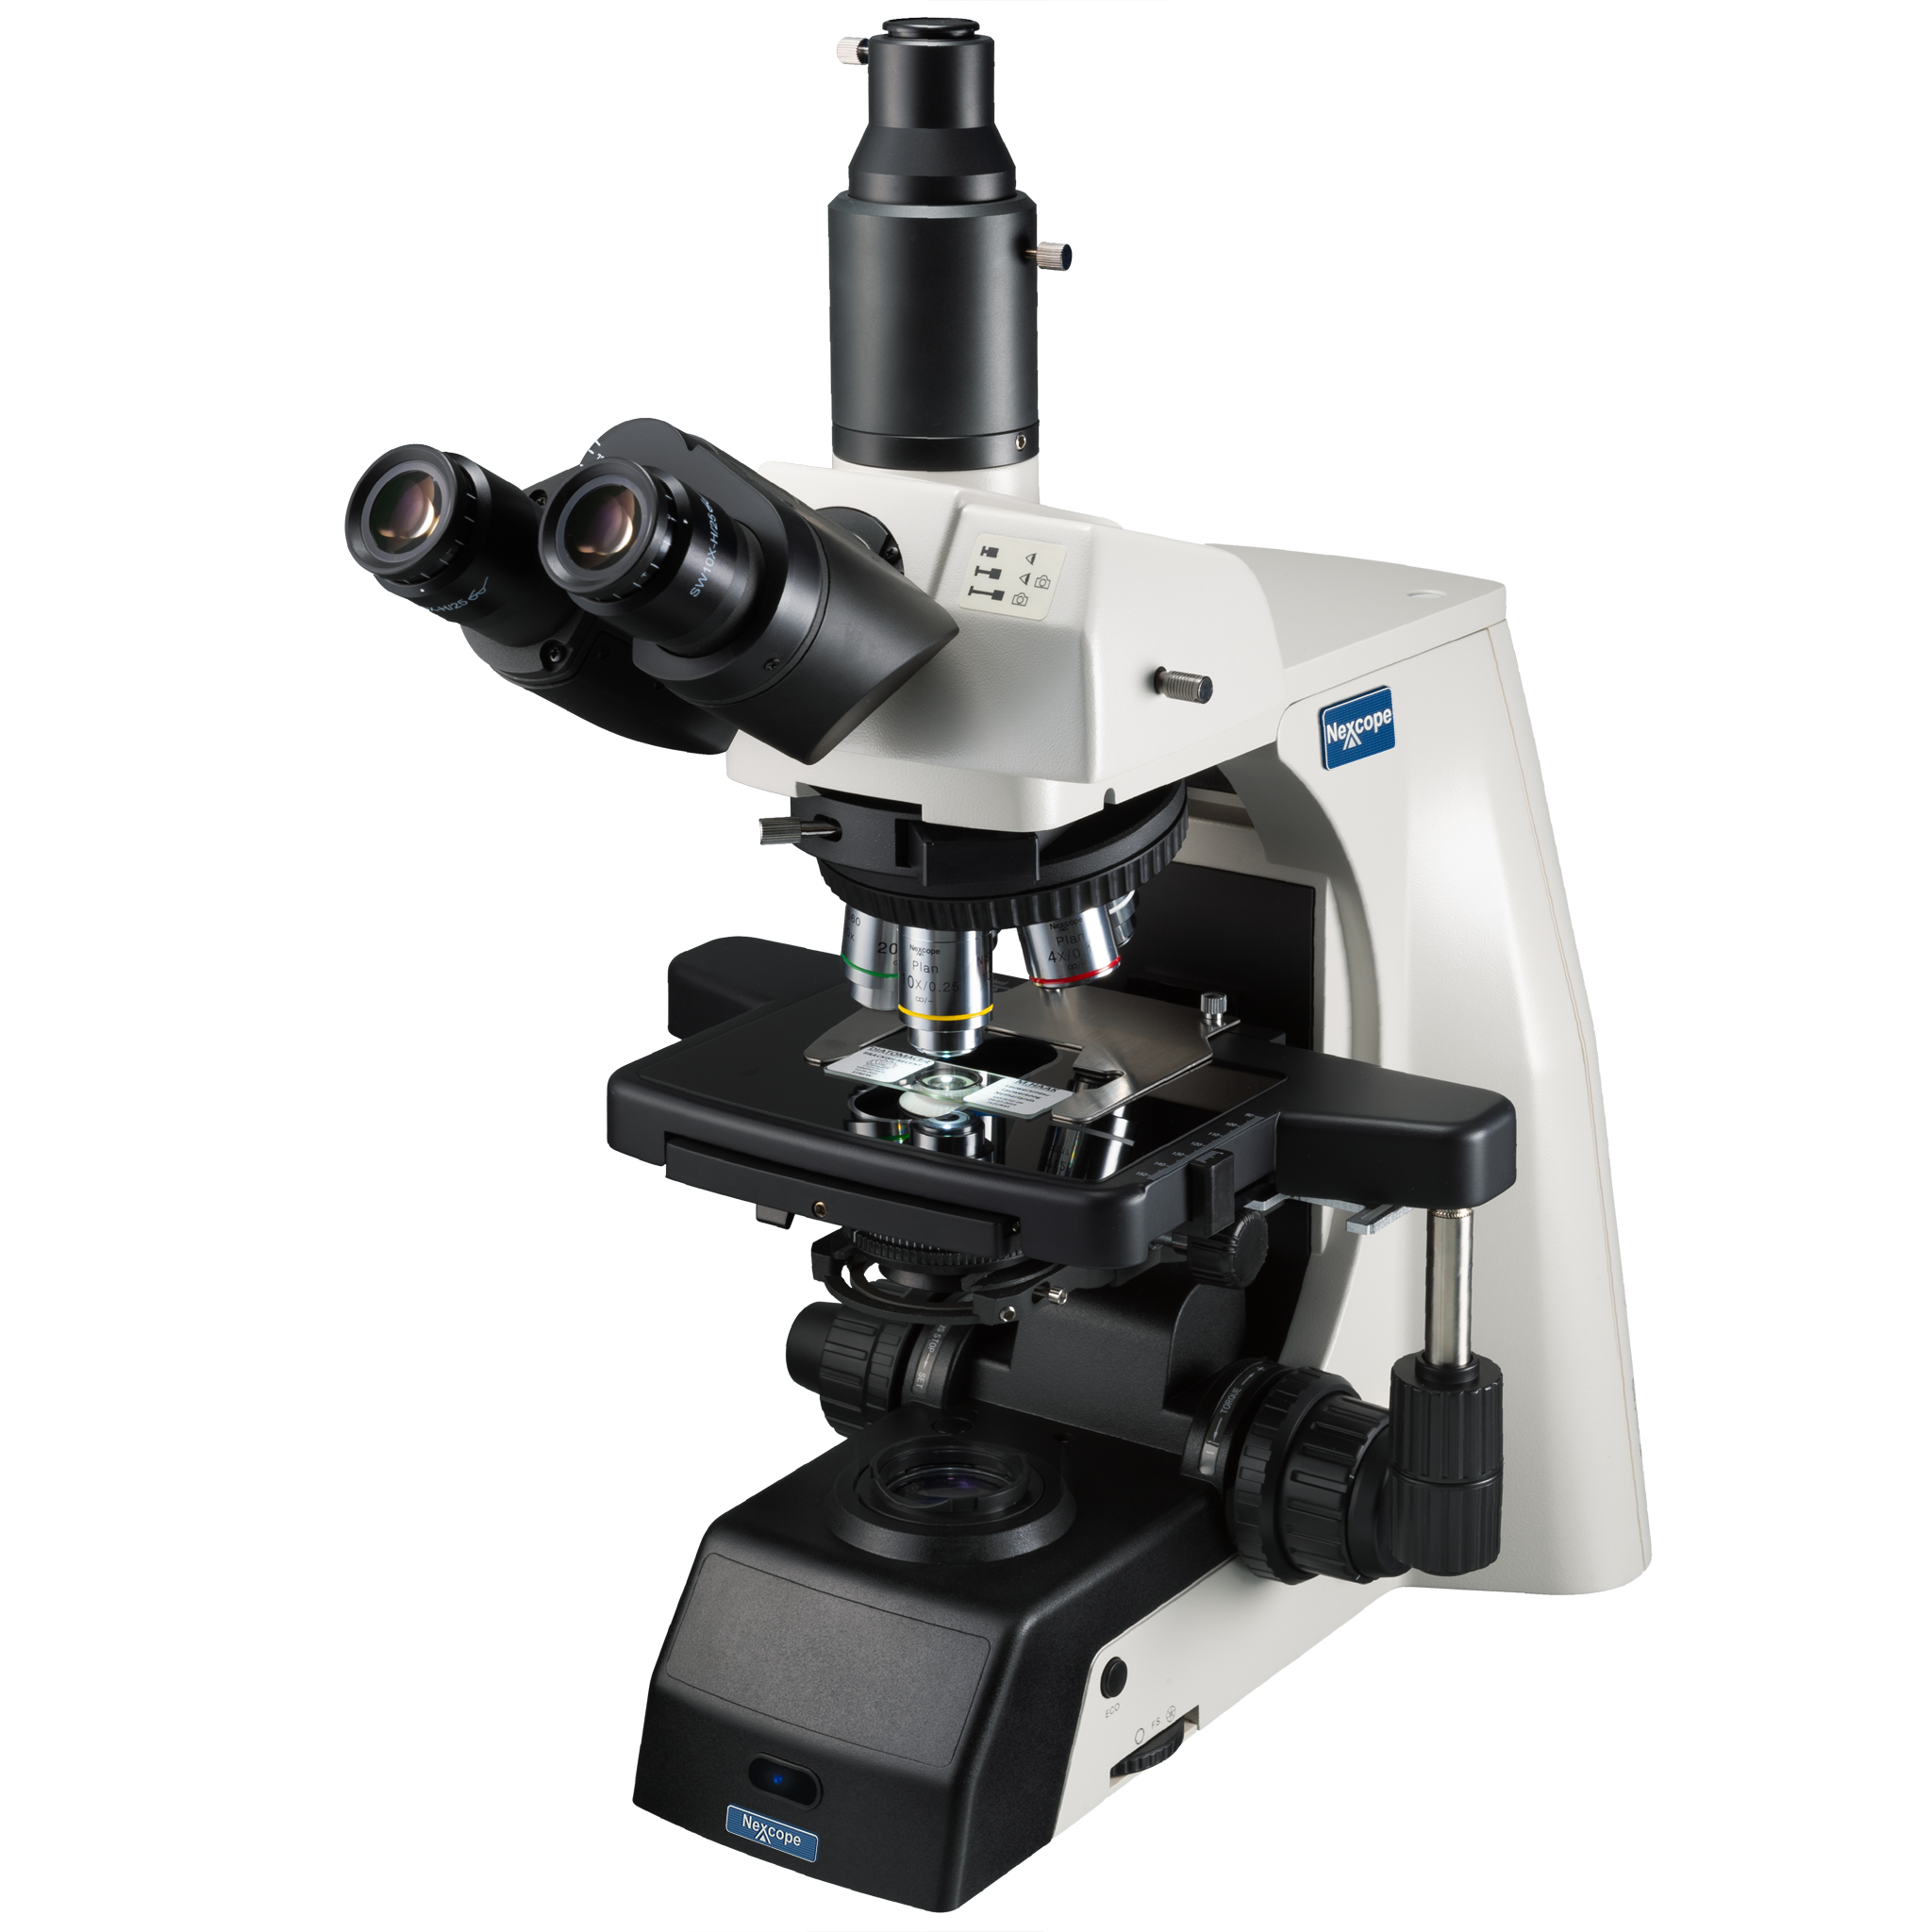 Microscopio profesional de laboratorio Nexcope NE910 con gran capacidad de ampliación